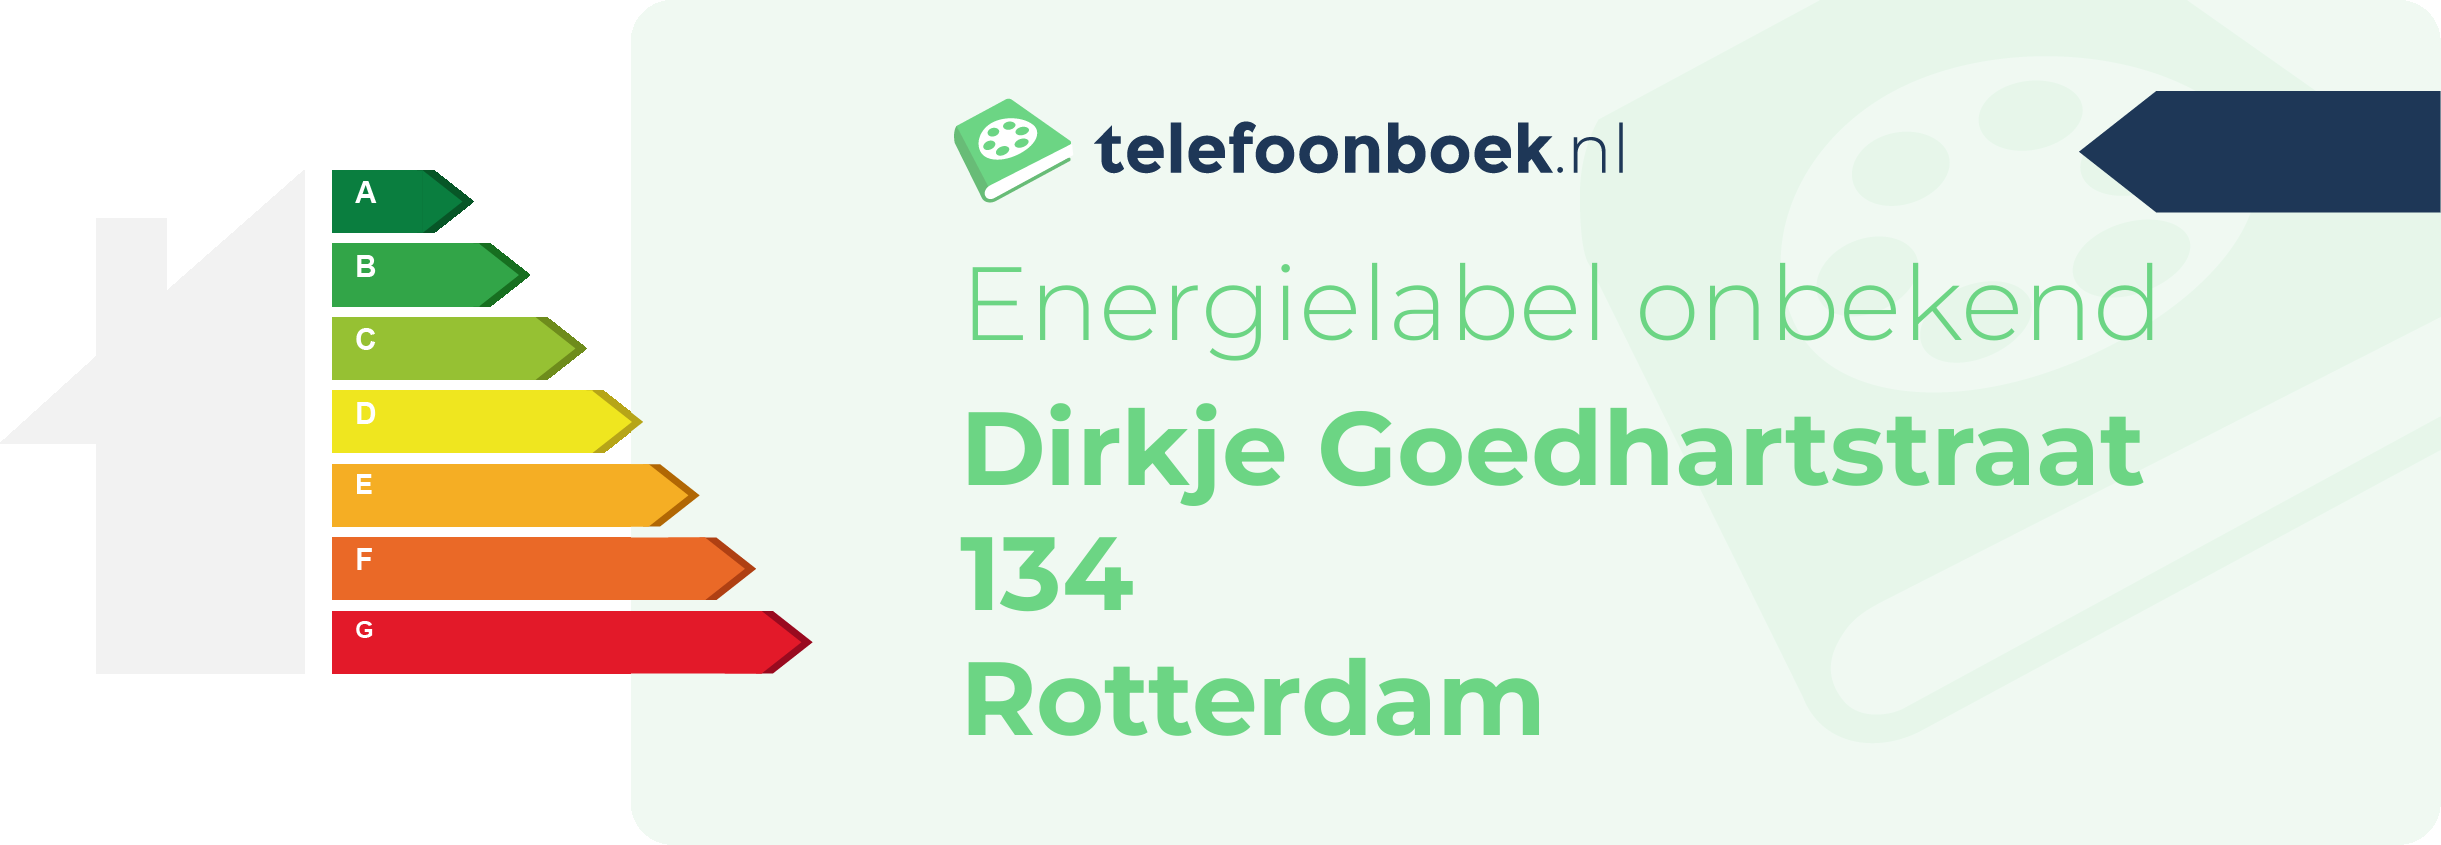 Energielabel Dirkje Goedhartstraat 134 Rotterdam